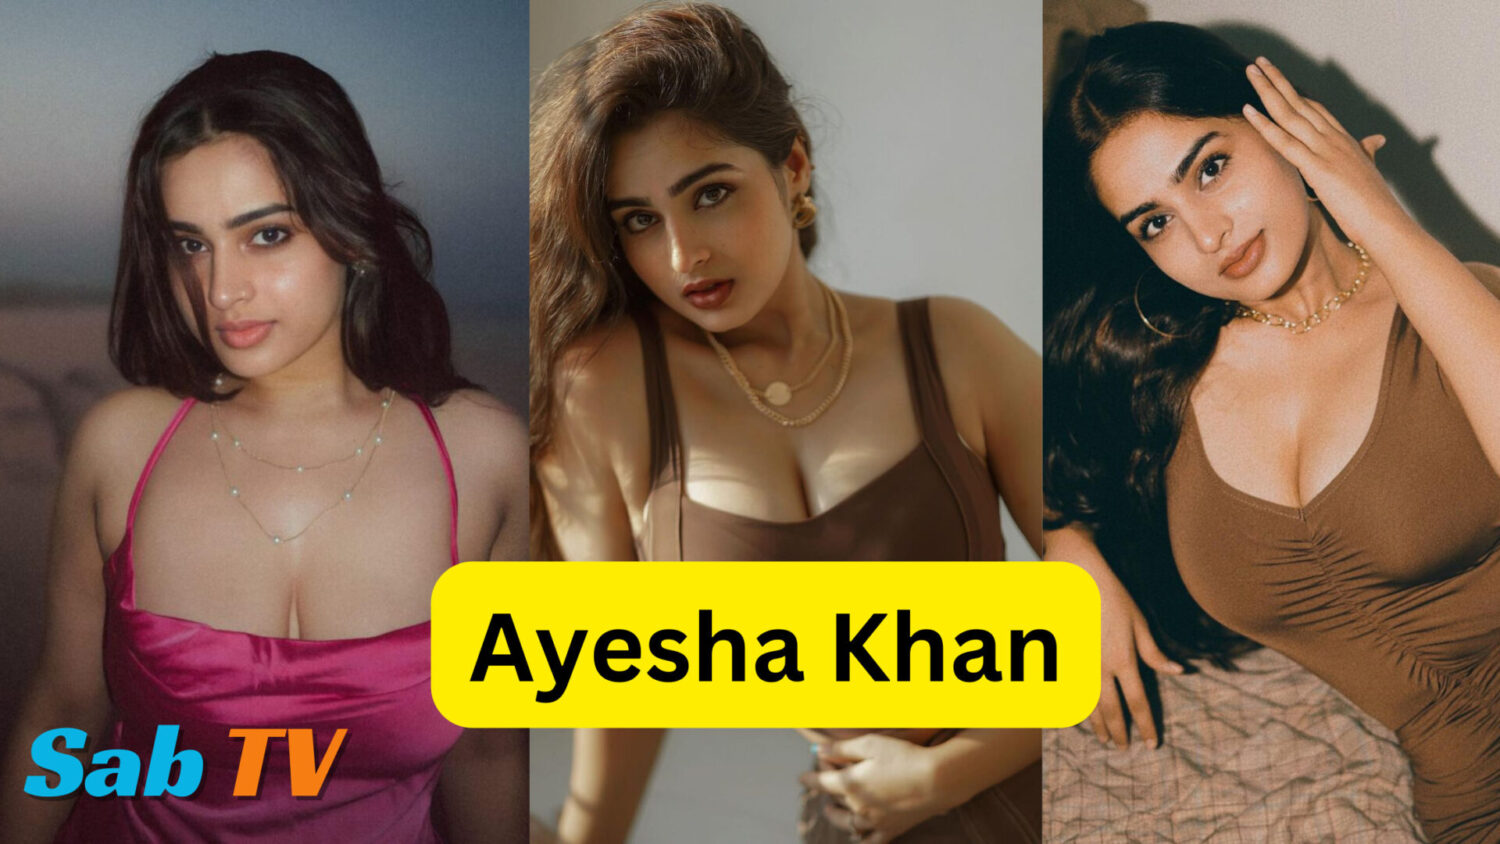 Ayesha Khan Age, Net worth, Bigg Boss, Munawar, Boyfriend, Family, Height, Religion, Bio